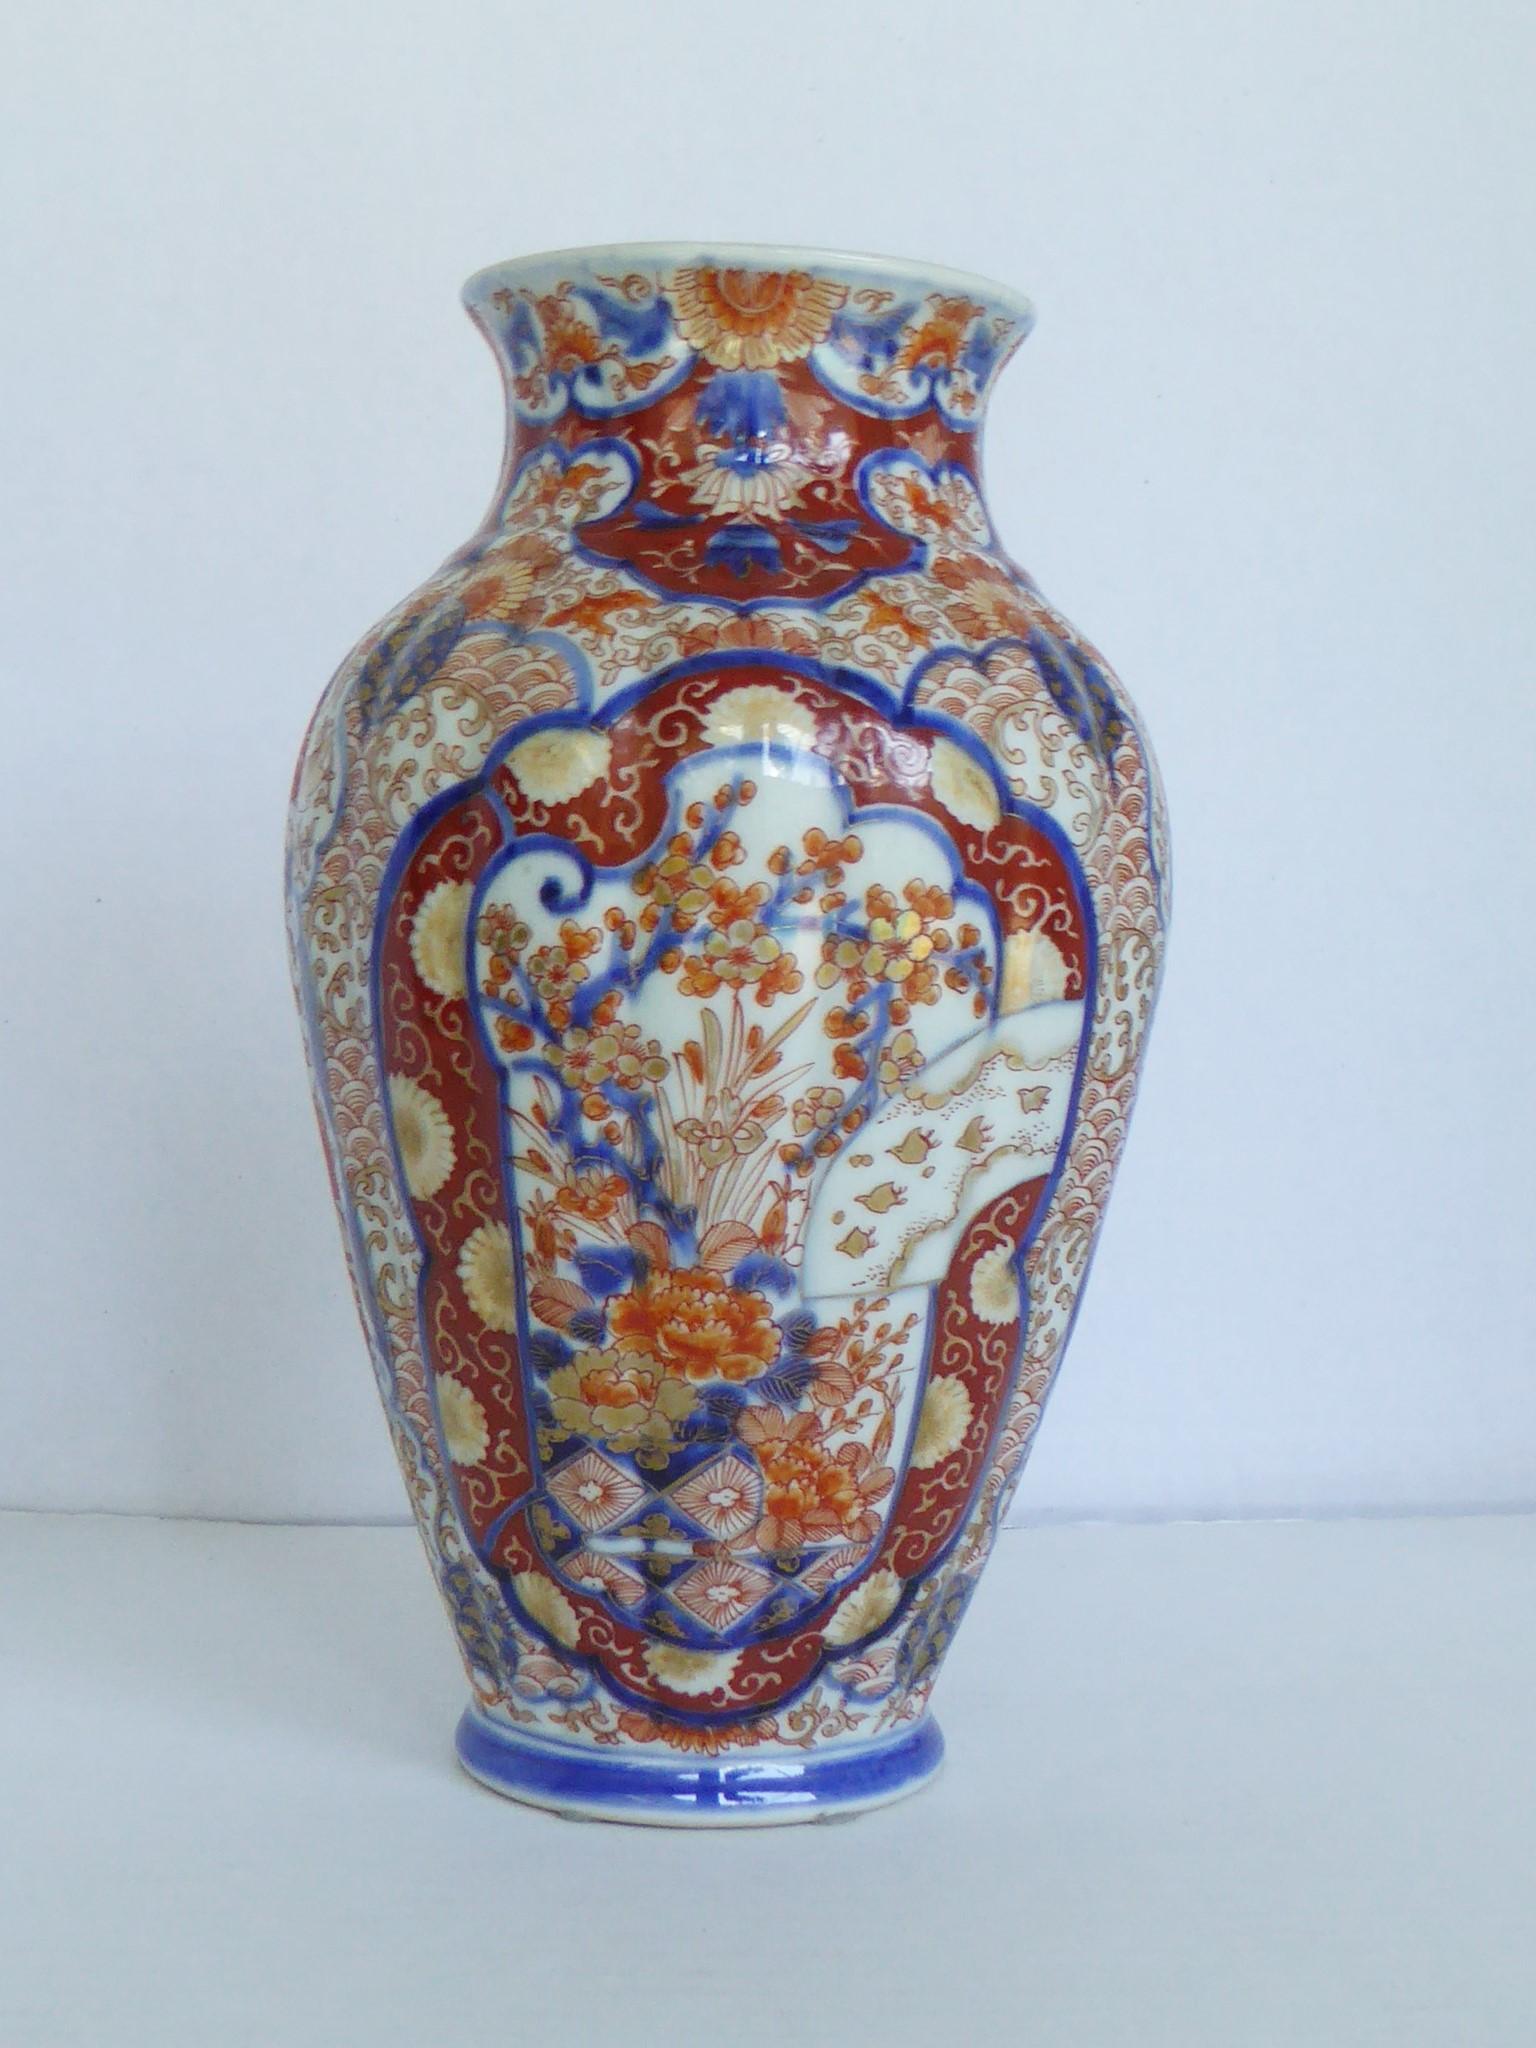 Ravissant vase en porcelaine Imari de la période Edo (1603-1867), de forme européenne. Créée avec une surface verticale festonnée, peinte et jetée à la main. Décorée d'un médaillon à l'avant et d'un autre à l'arrière représentant de nombreux